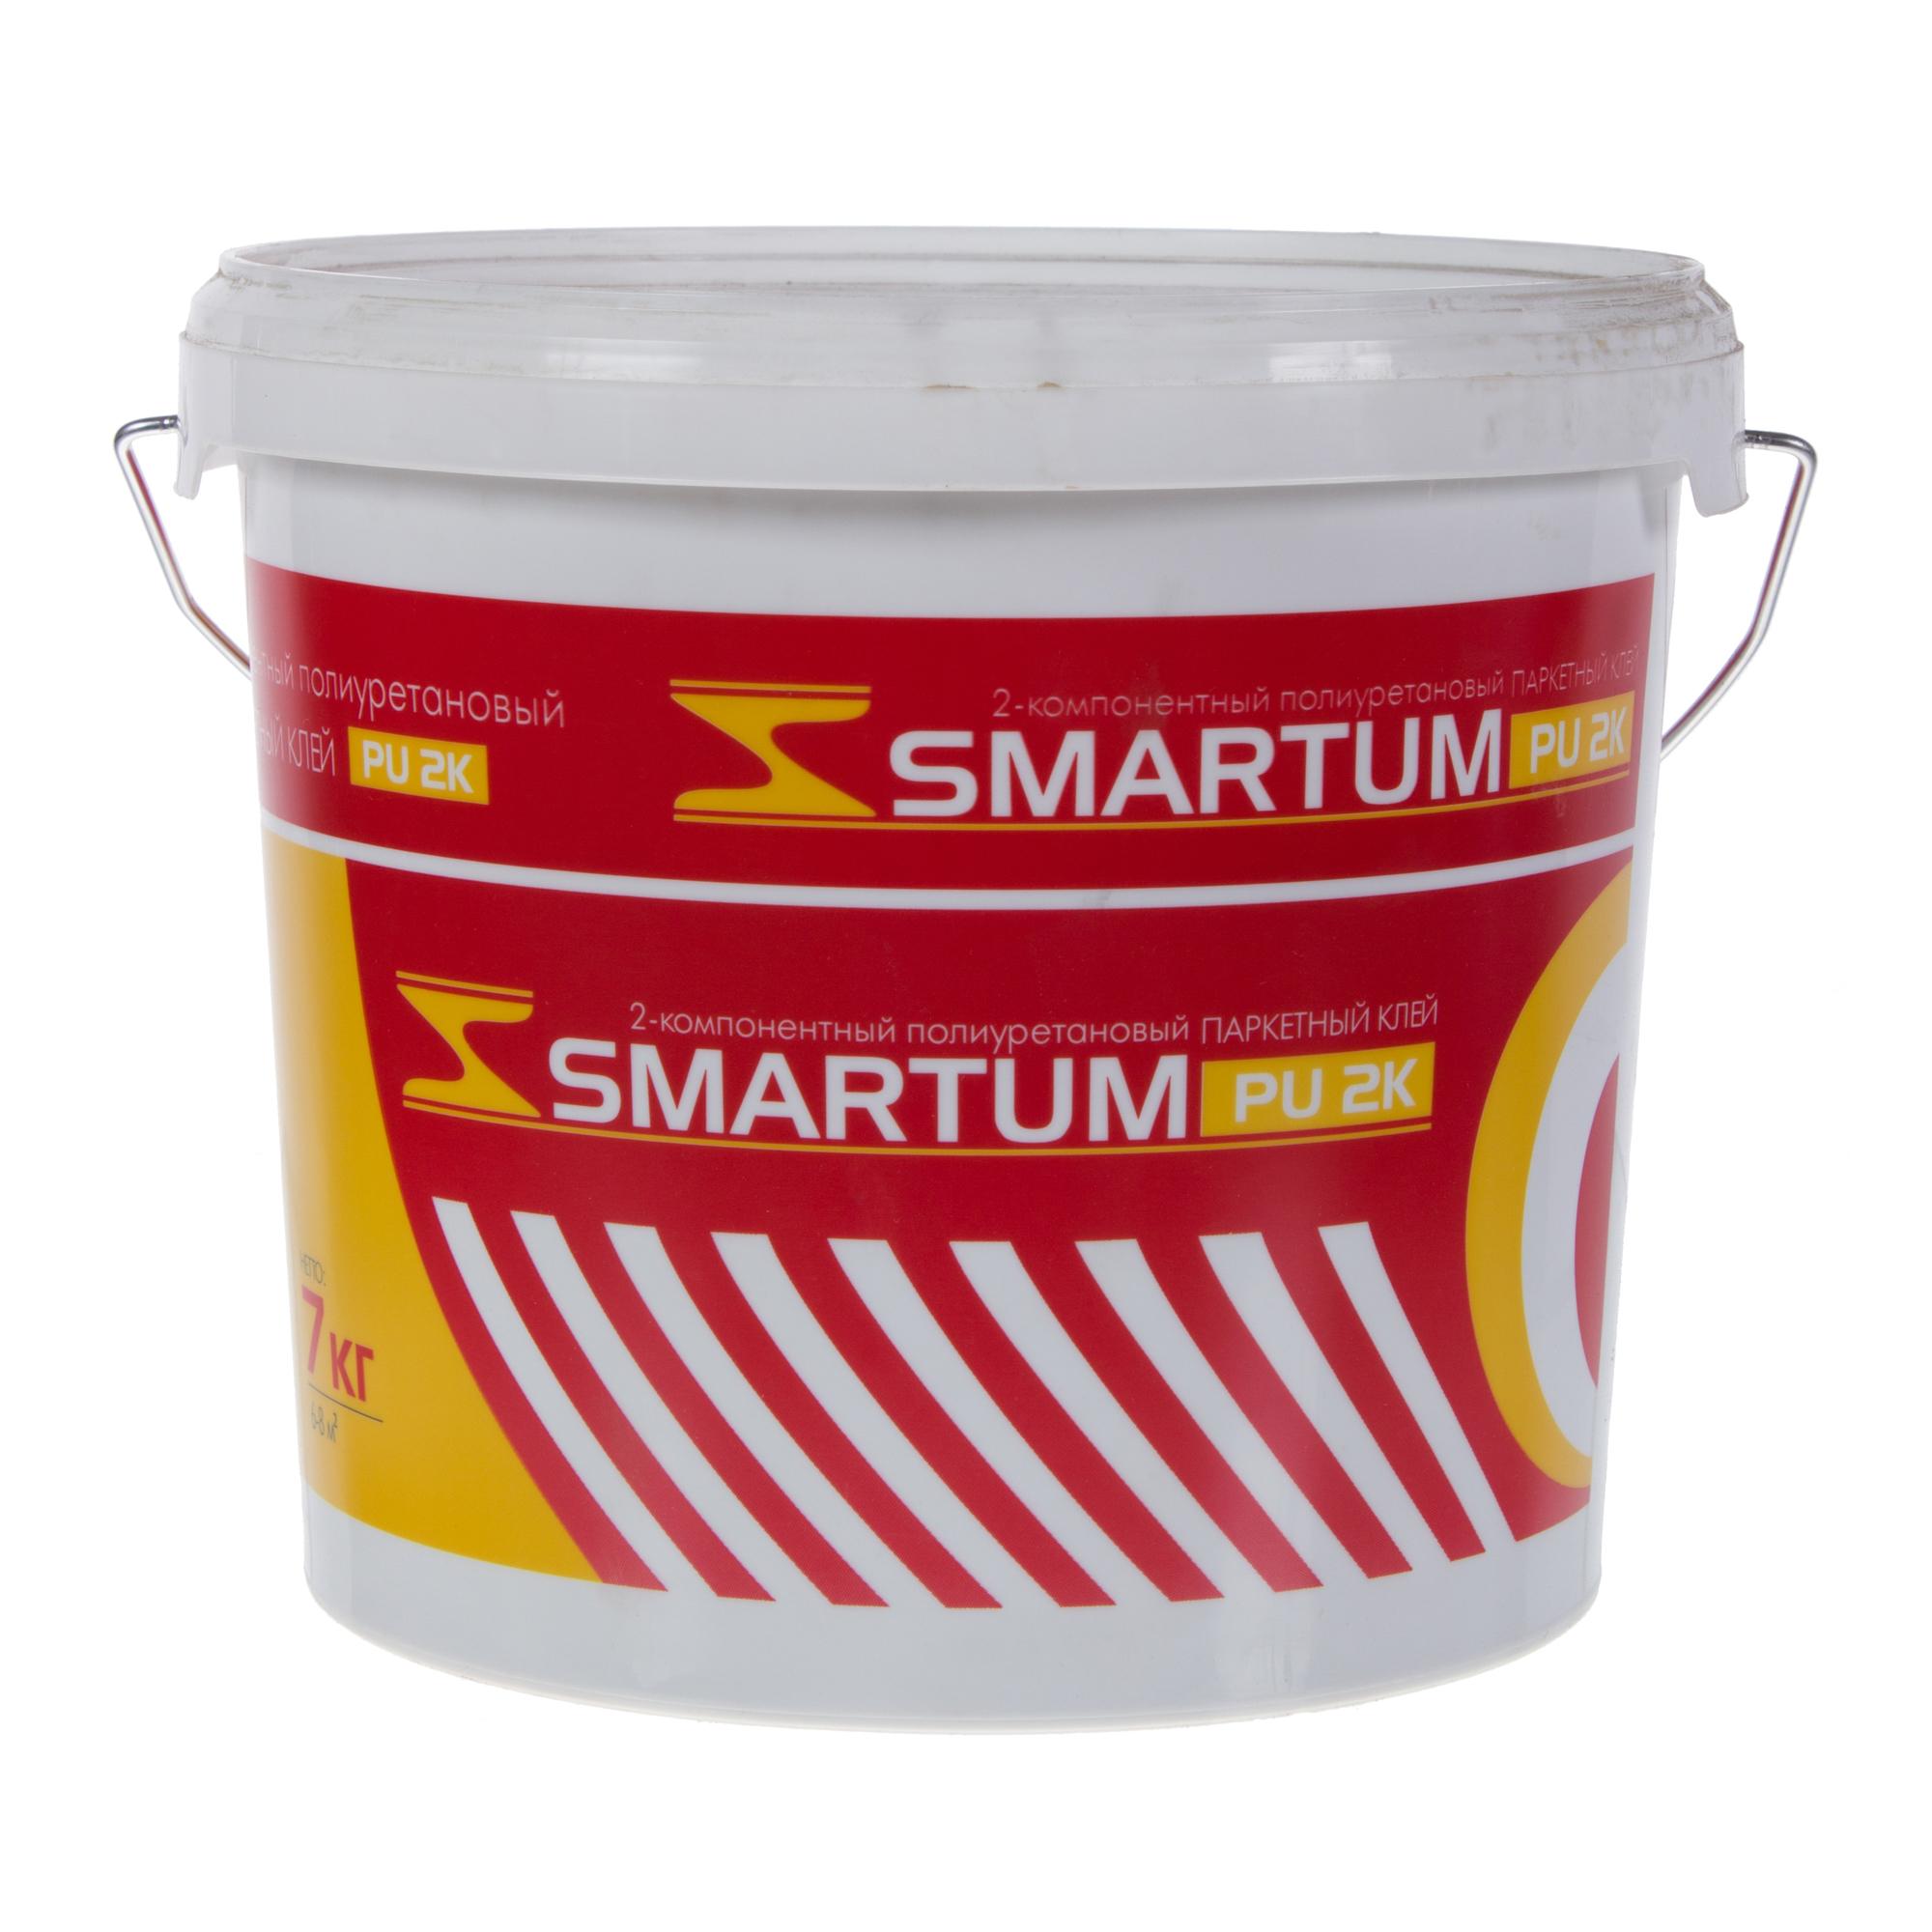 Клей однокомпонентный купить. Smartum 2k клей. Паркетный клей 2х компонентный Smartum. Клей PU 2k Smartum. Паркетный клей Smartum PU 1k.